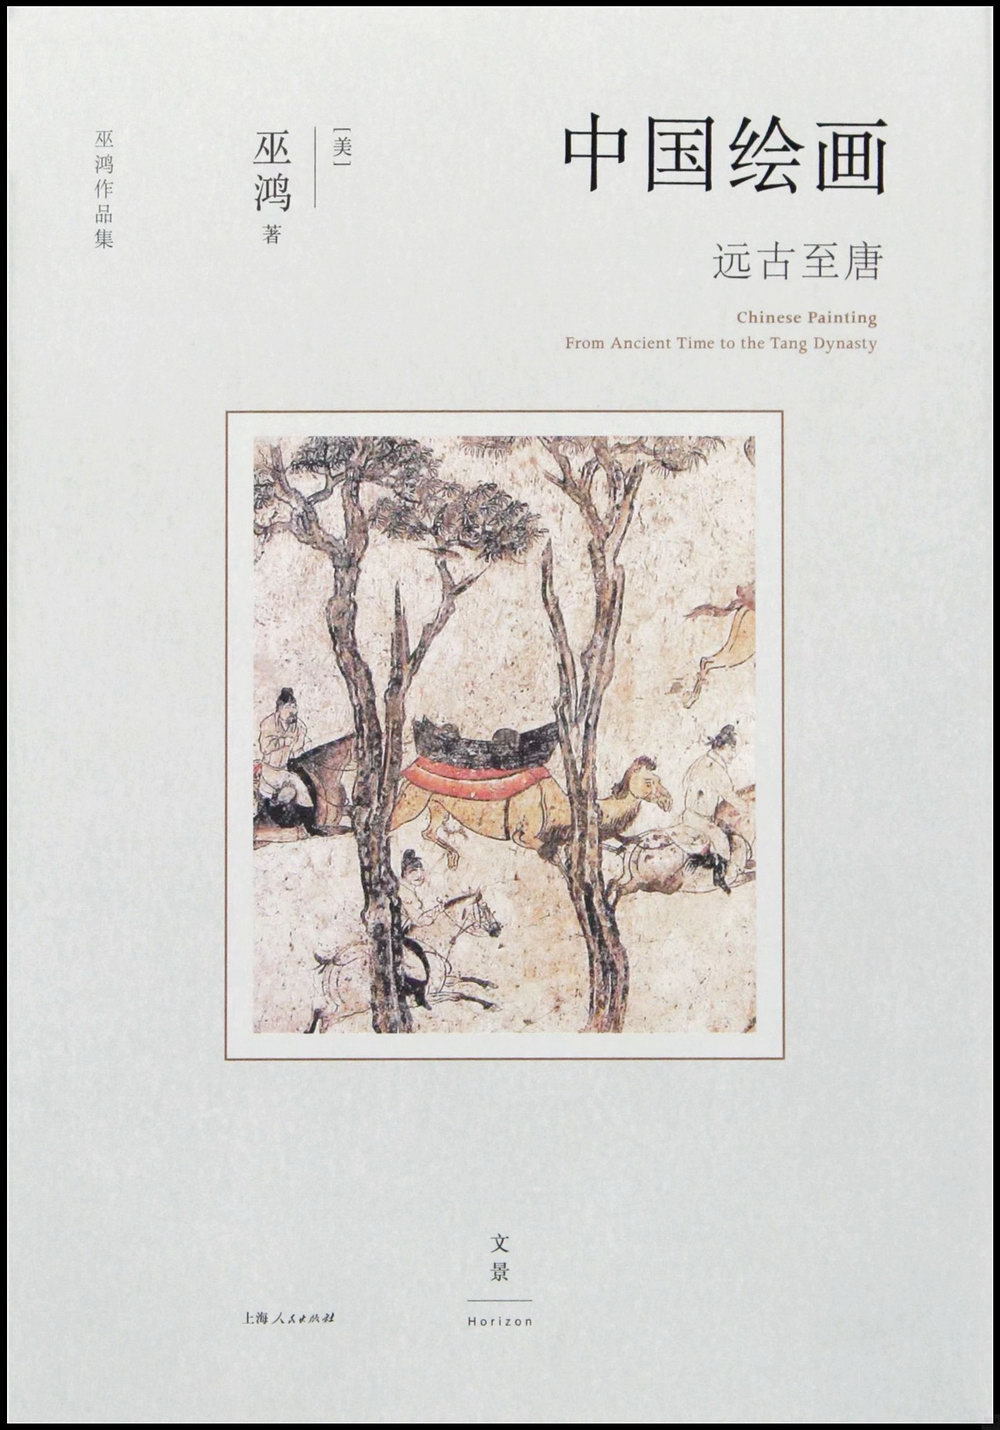 中國繪畫：遠古至唐